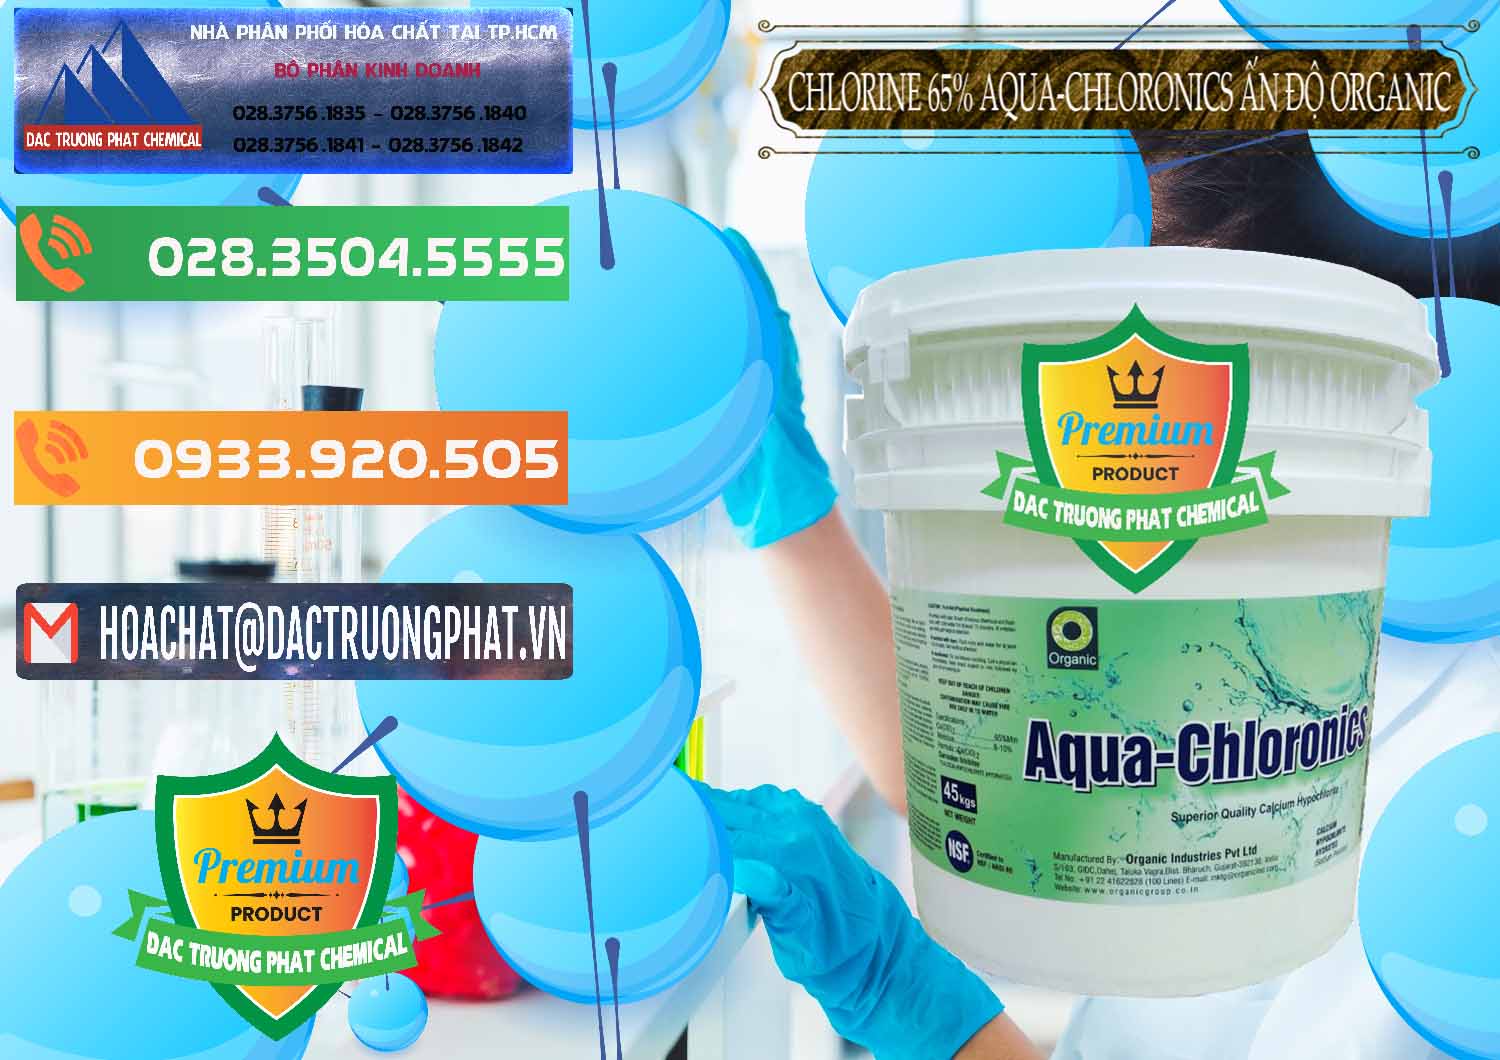 Nơi chuyên kinh doanh _ bán Chlorine – Clorin 65% Aqua-Chloronics Ấn Độ Organic India - 0210 - Chuyên bán _ cung cấp hóa chất tại TP.HCM - hoachatxulynuoc.com.vn